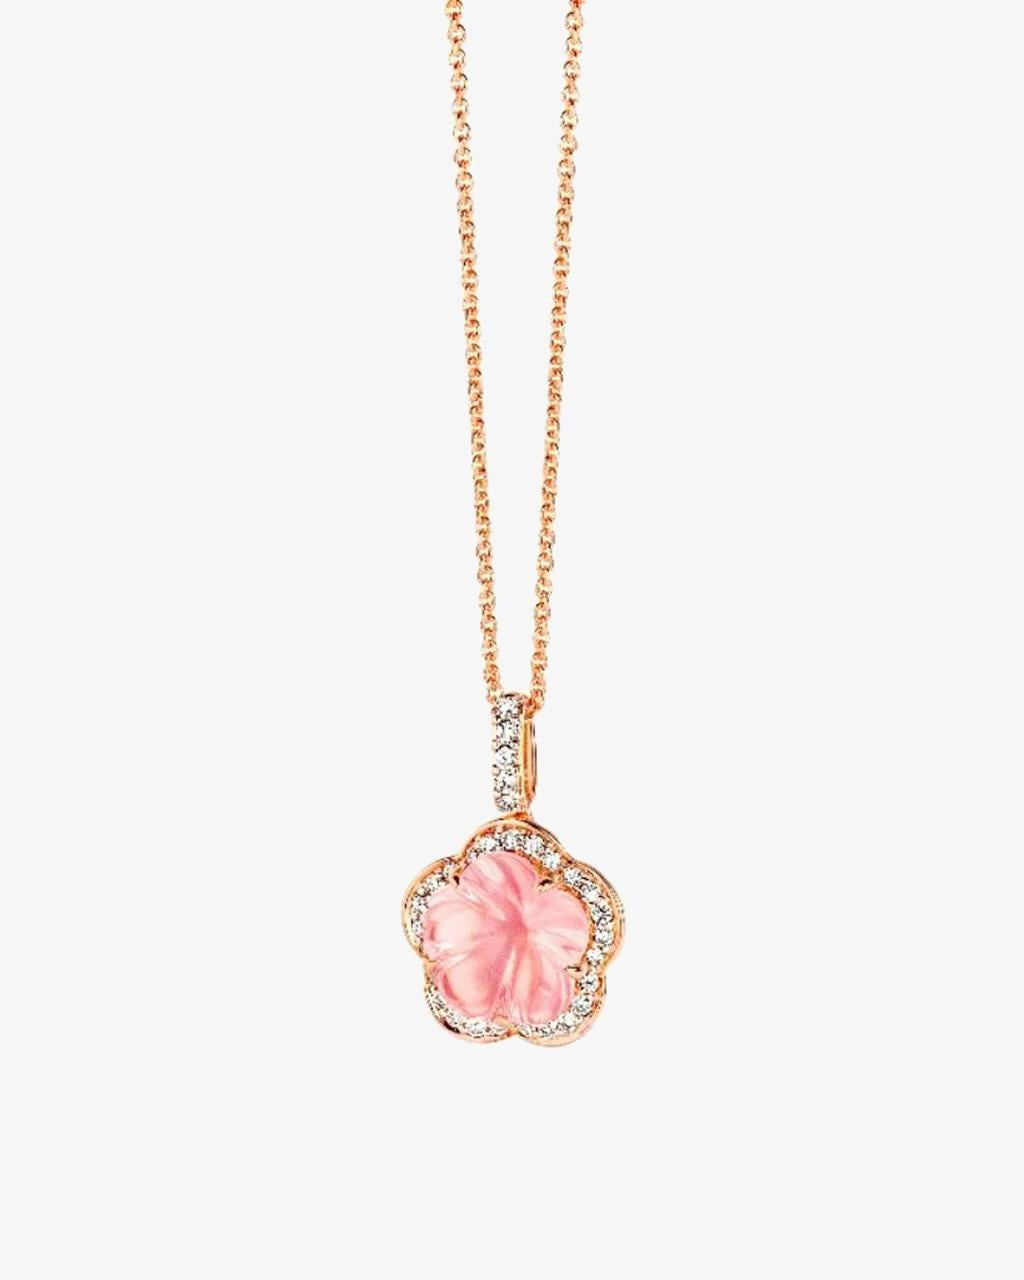 Hulchi Belluni 'Fiori' Collection Rose Quartz & Diamond Flower Pendant